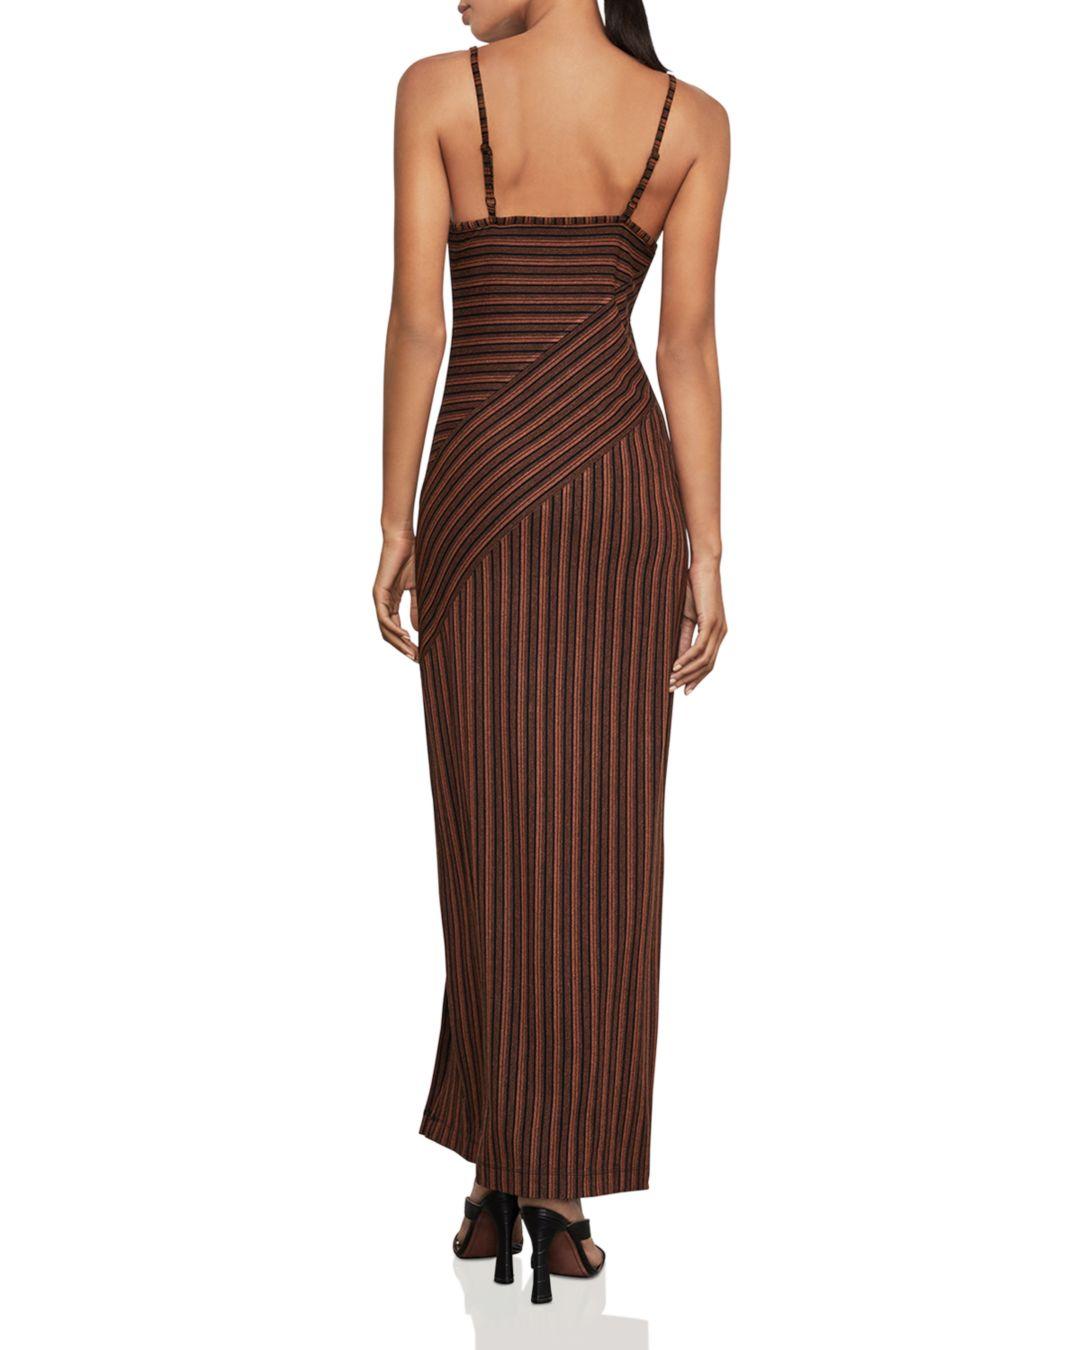 BCBGMAXAZRIA Womens Asymmetrical Stripe Flared Dress